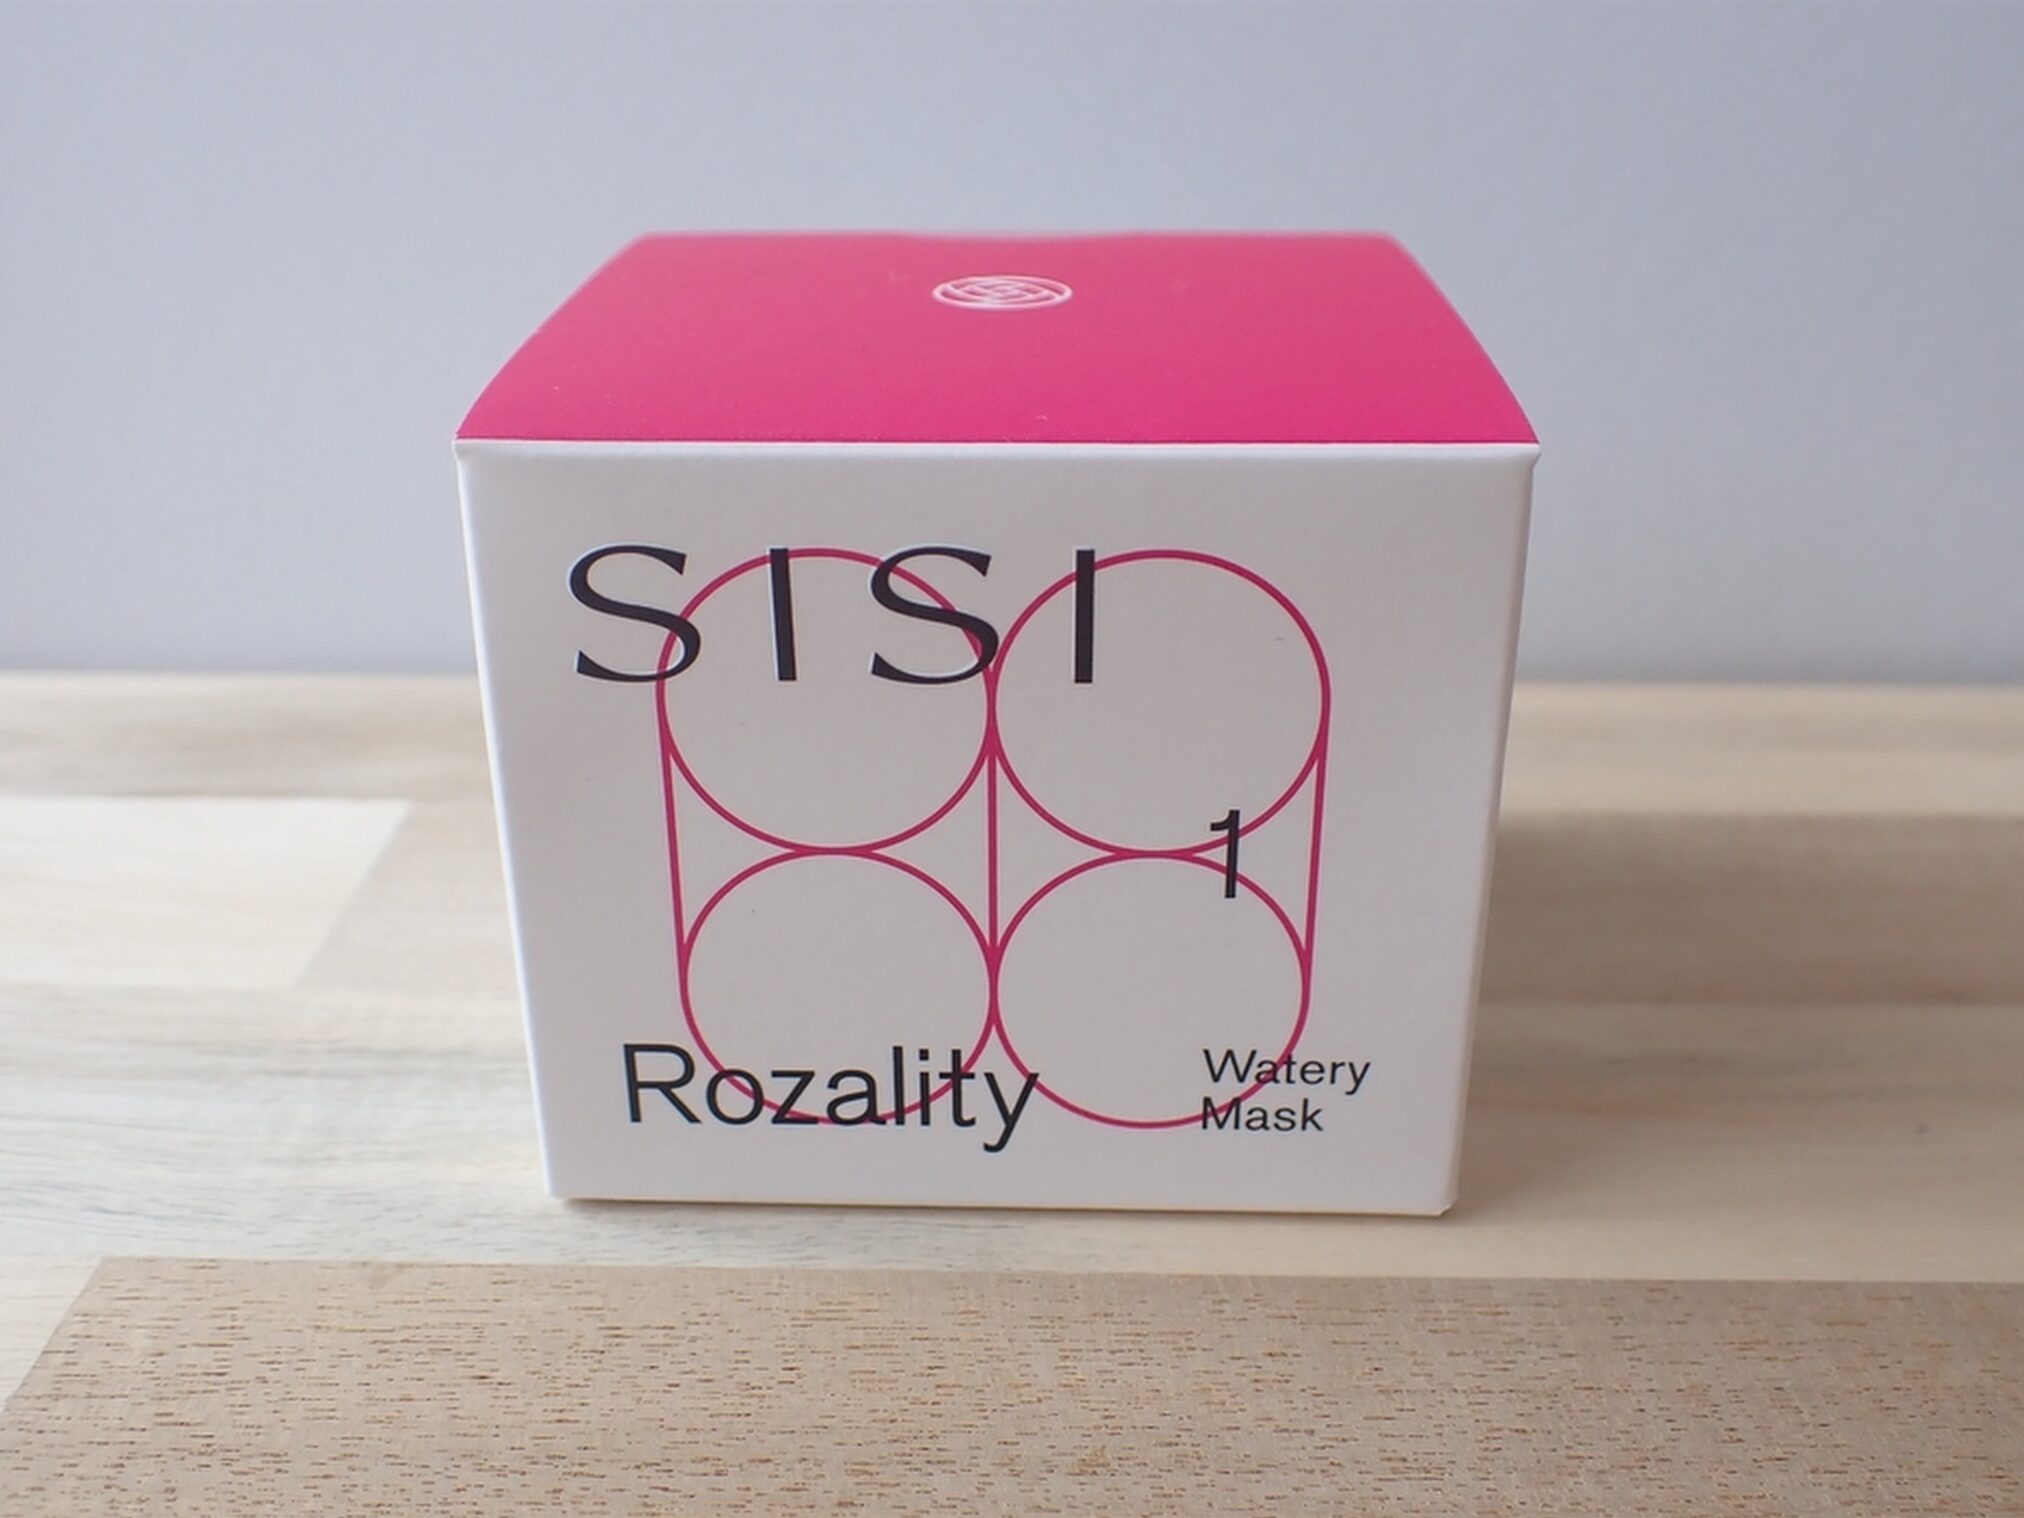 株式会社SISI Rozality ロザリティ ウォータリーマスク 塗るマスク、はがさないマスク